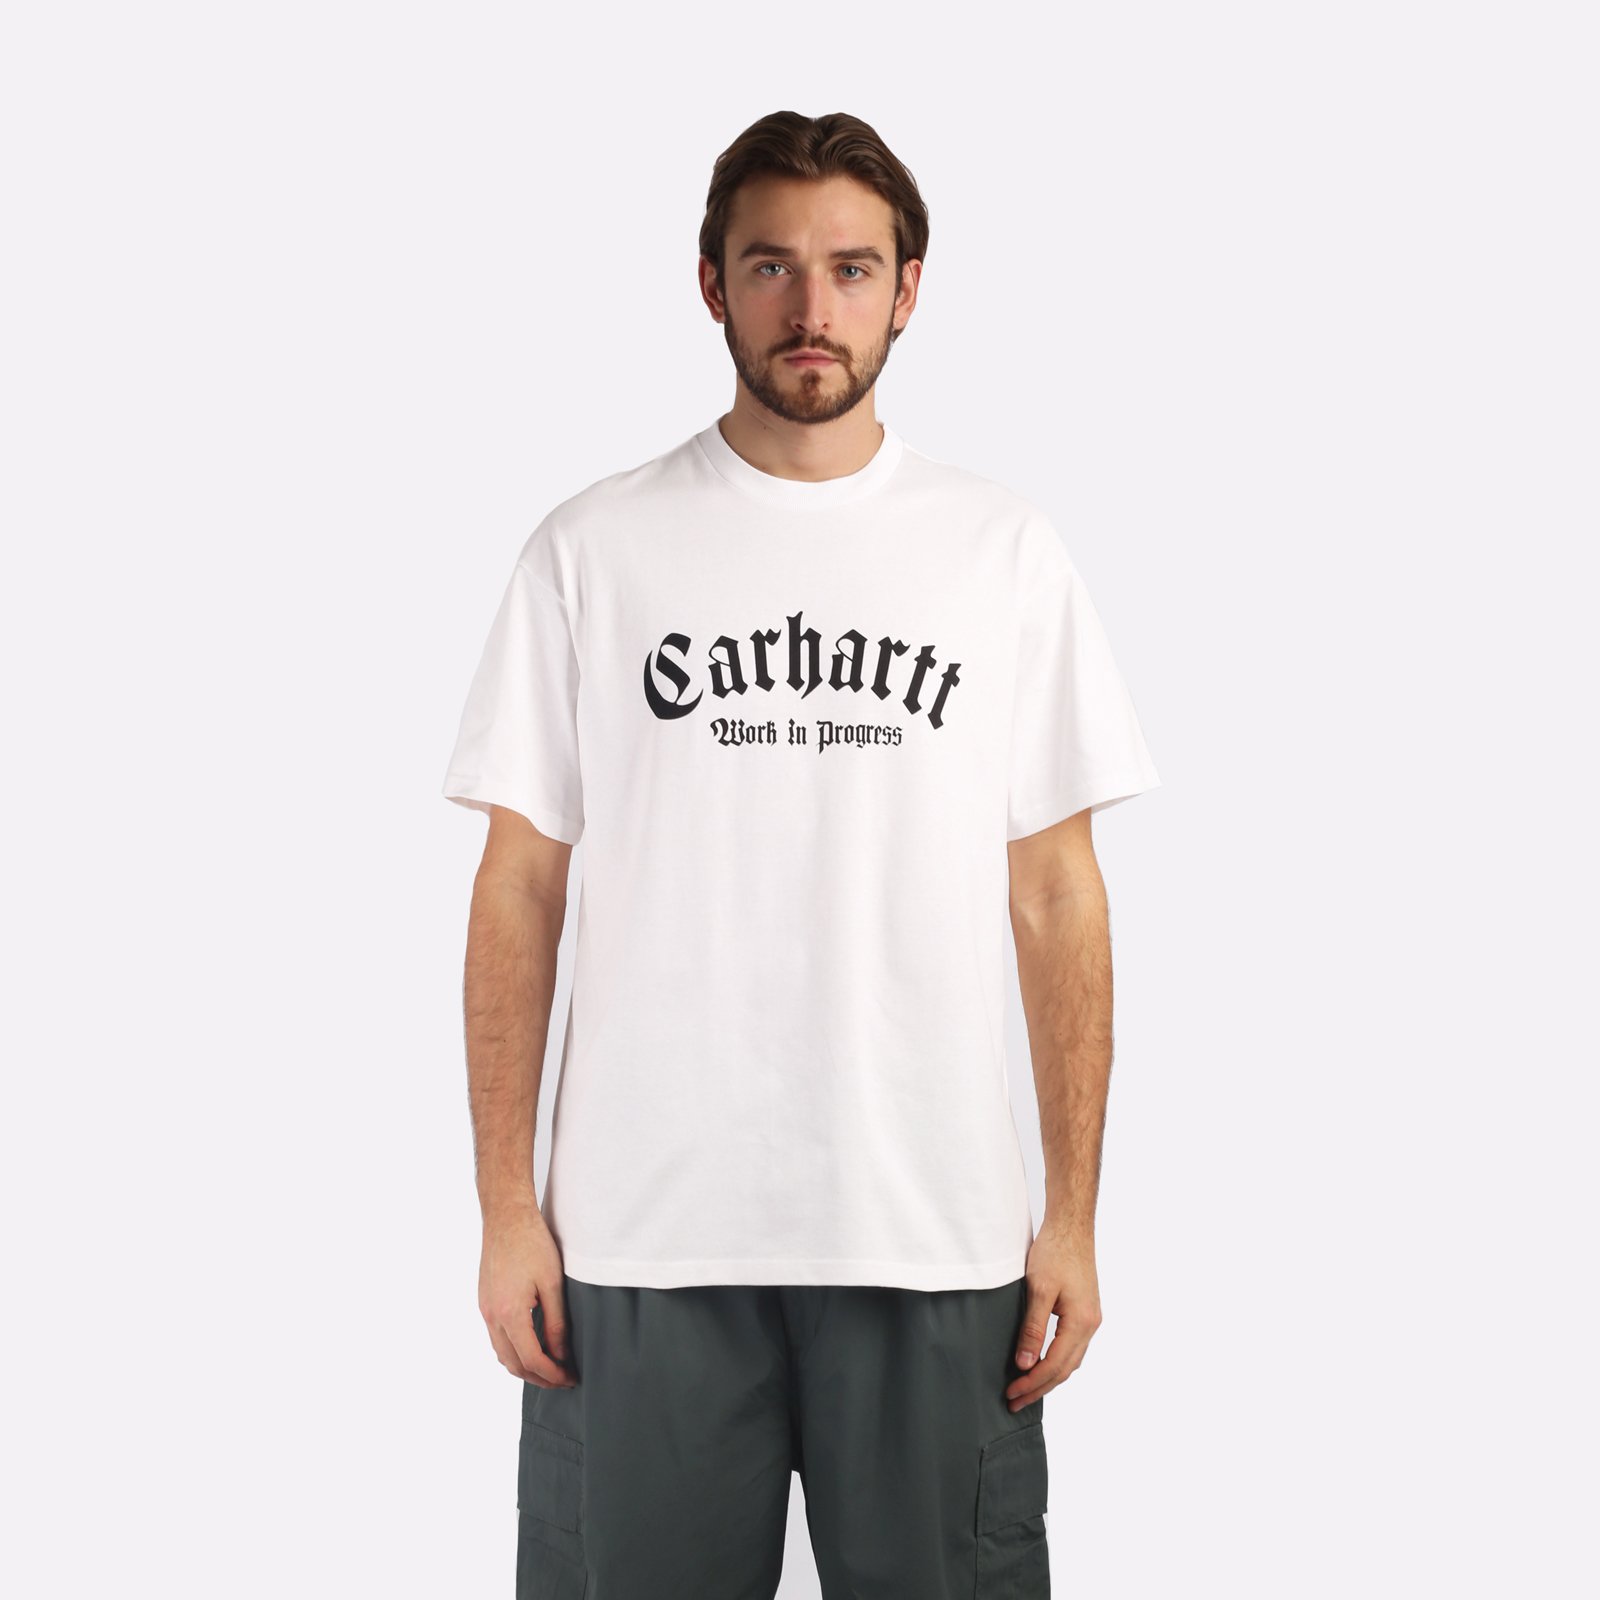 мужская белая футболка Carhartt WIP S/S Onyx T-Shirt I032875-white/black - цена, описание, фото 1